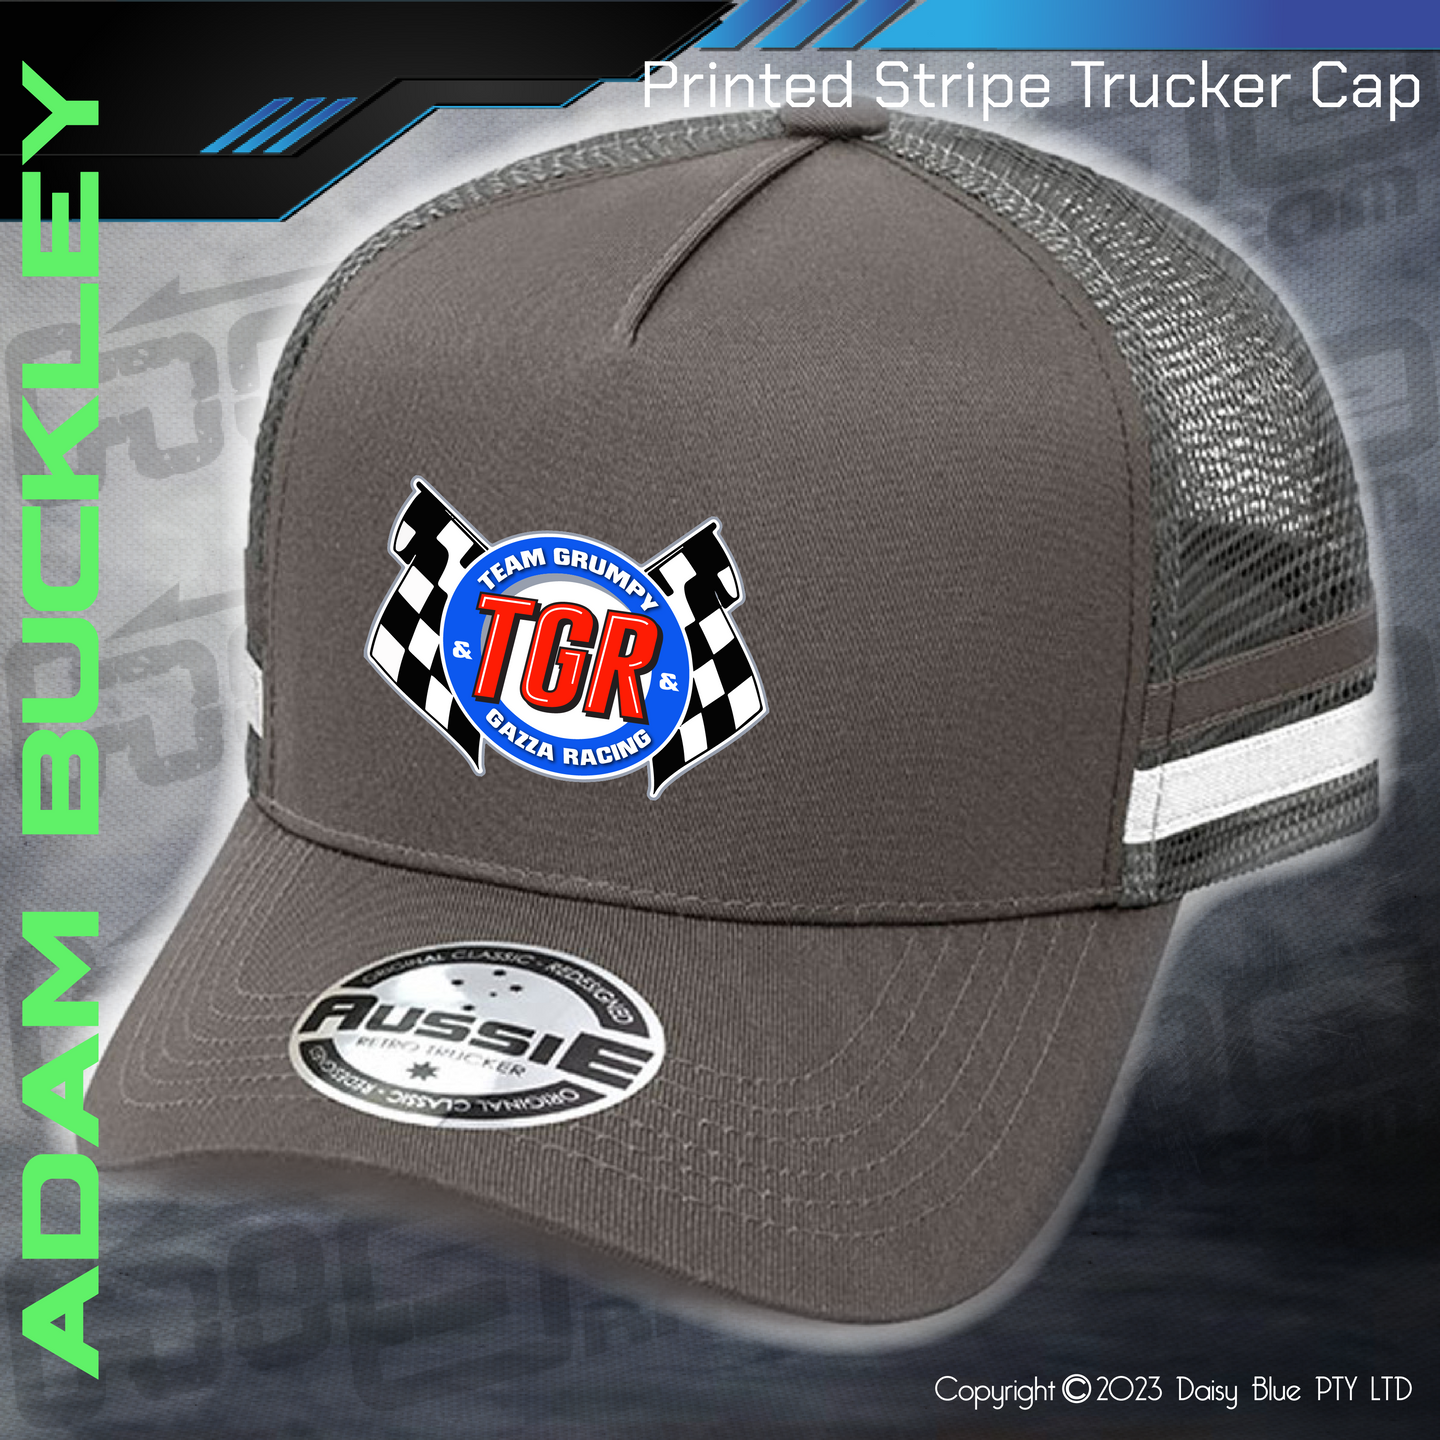 STRIPE Trucker Cap - Adam Buckley